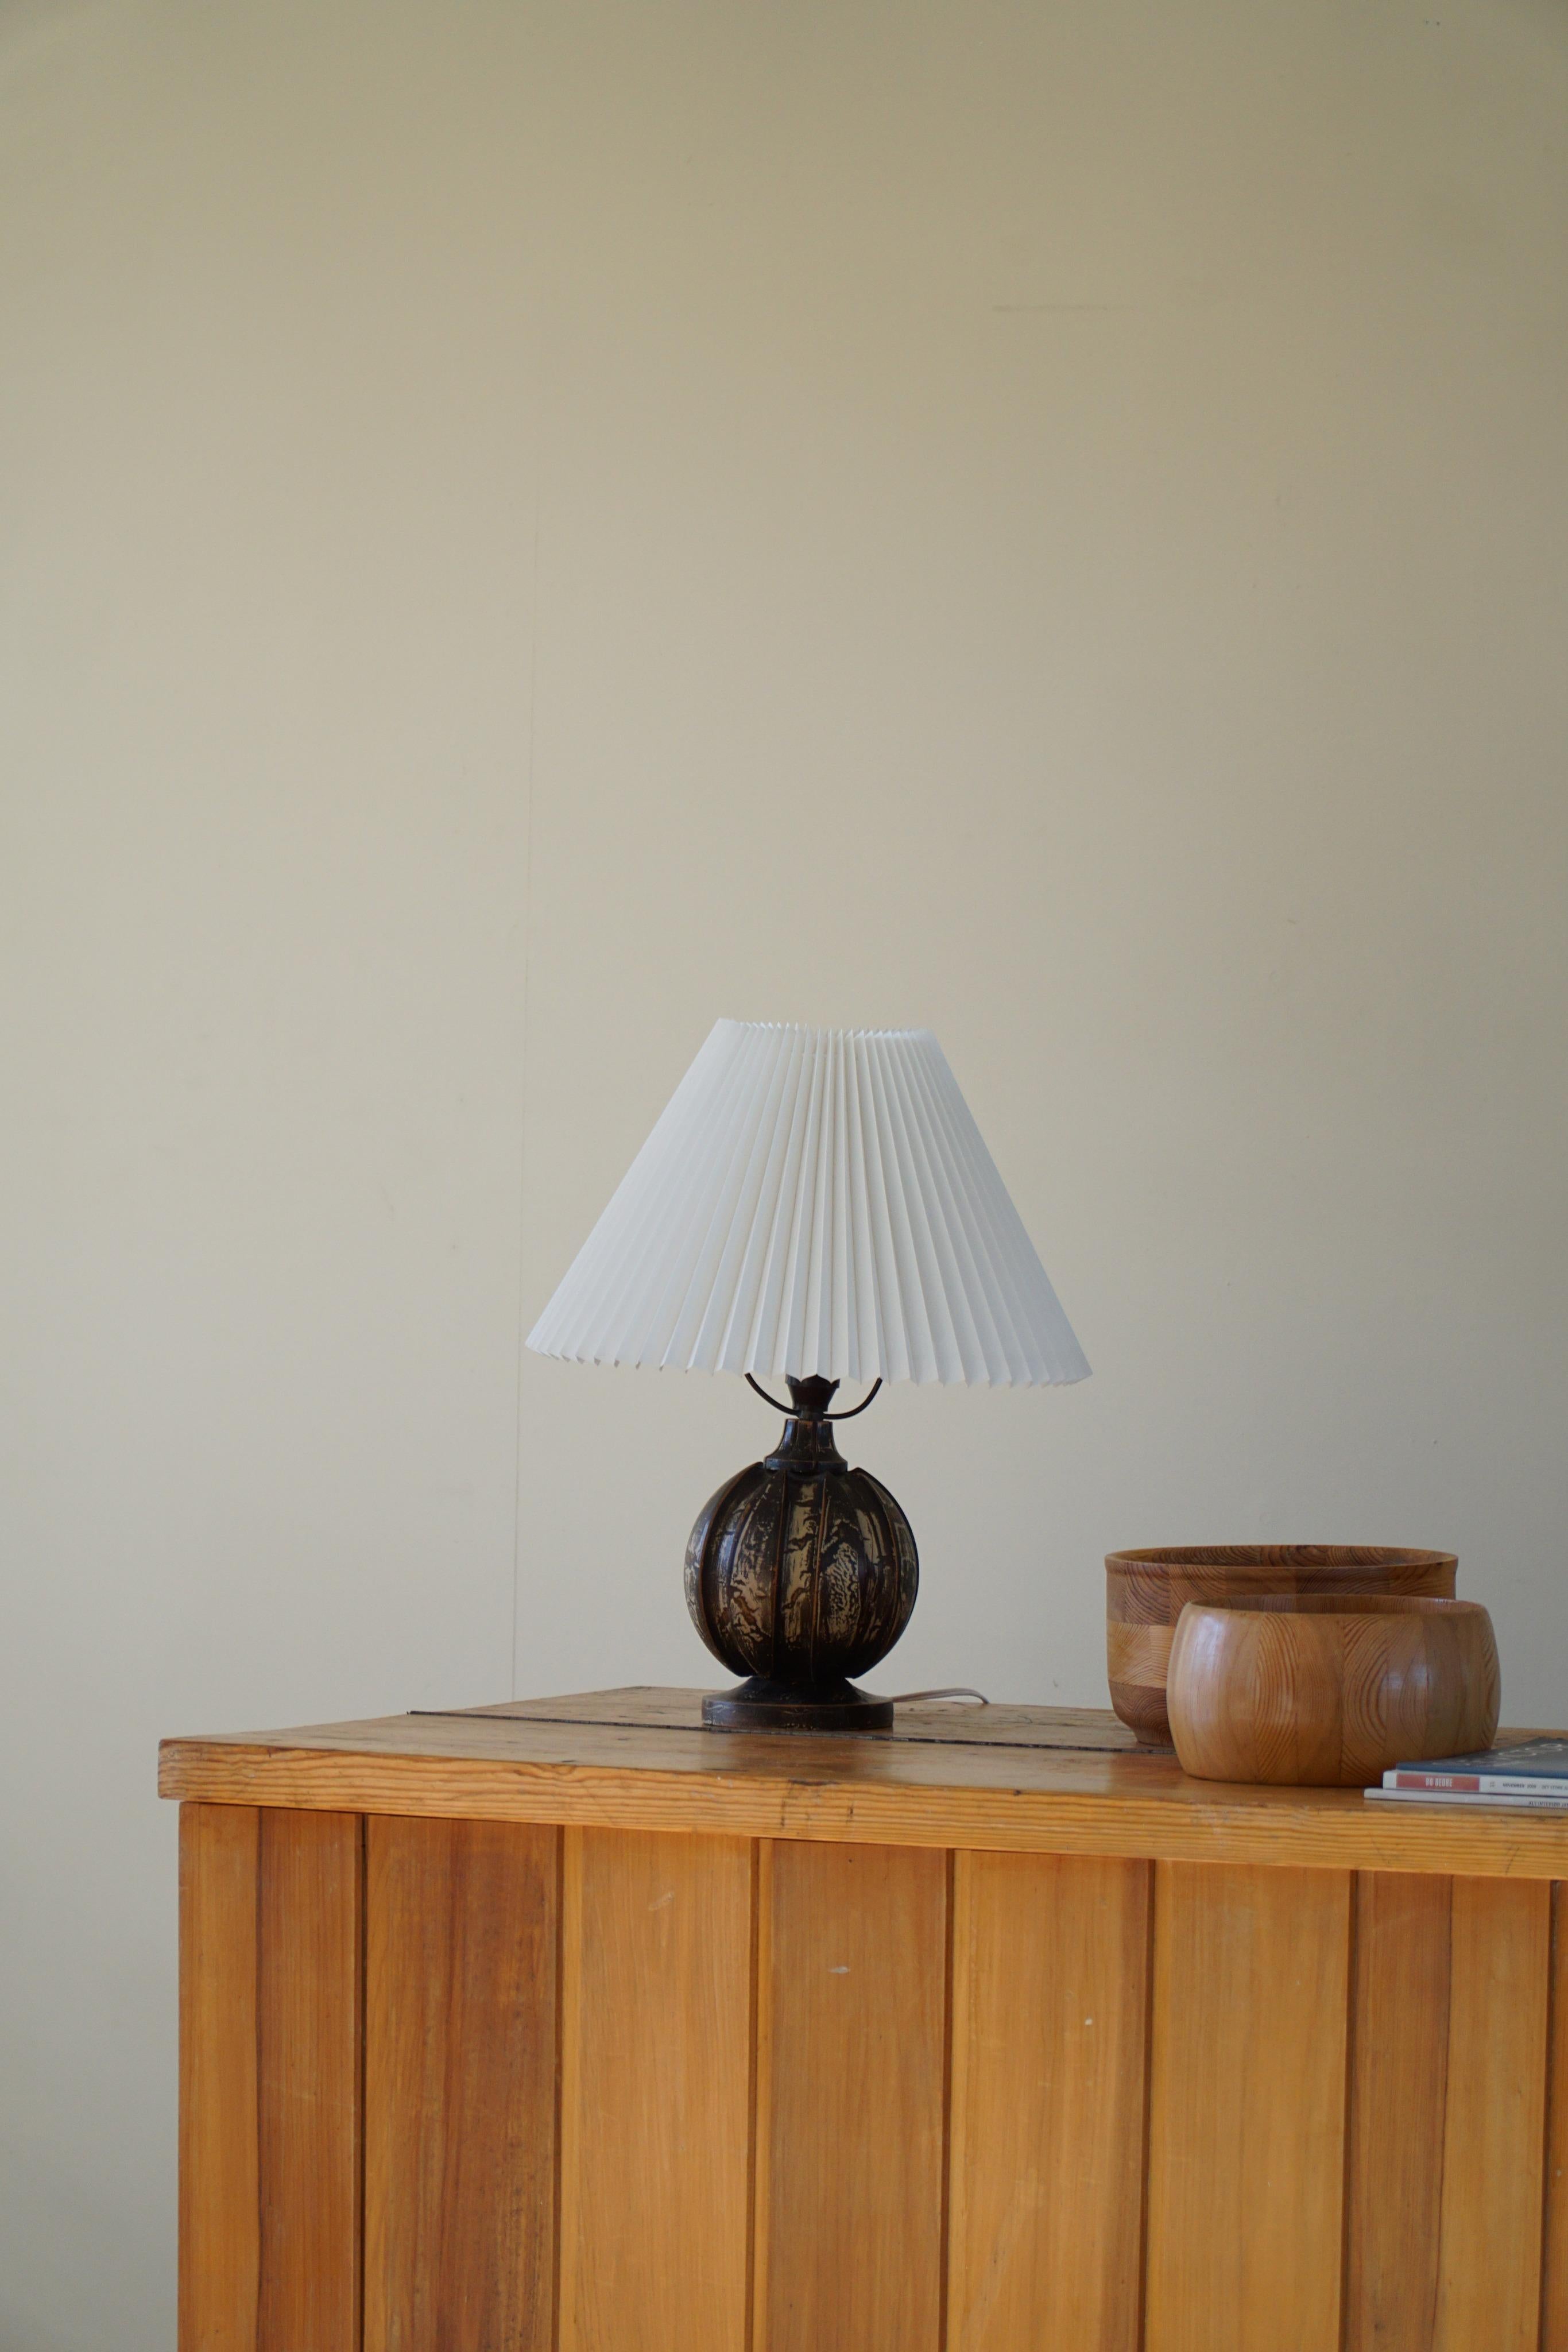 Lampe de table ronde en bois du milieu du 20e siècle avec une surface peinte. Fabriqué au Danemark. Une belle forme qui complète l'impression générale de cette lampe de table Art déco.

